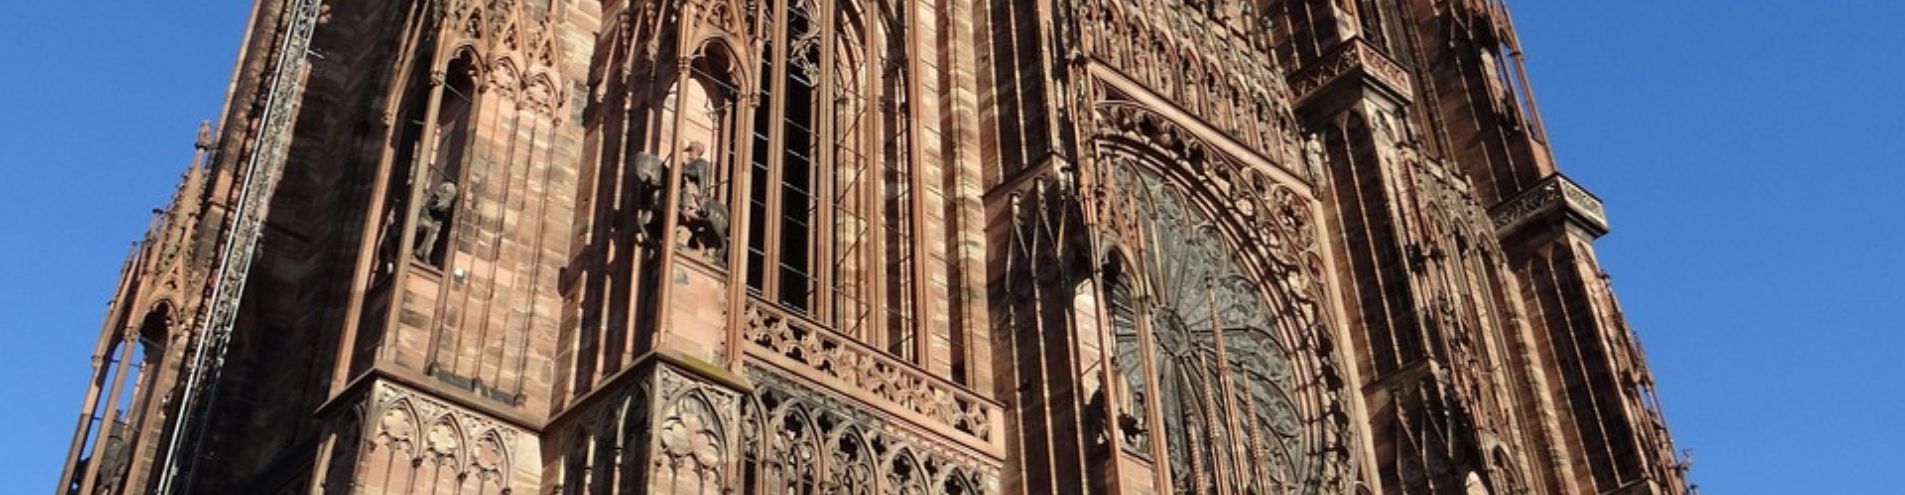 Poussière de silice: Rénovation du portail St Laurent de la Cathédrale de Strasbourg